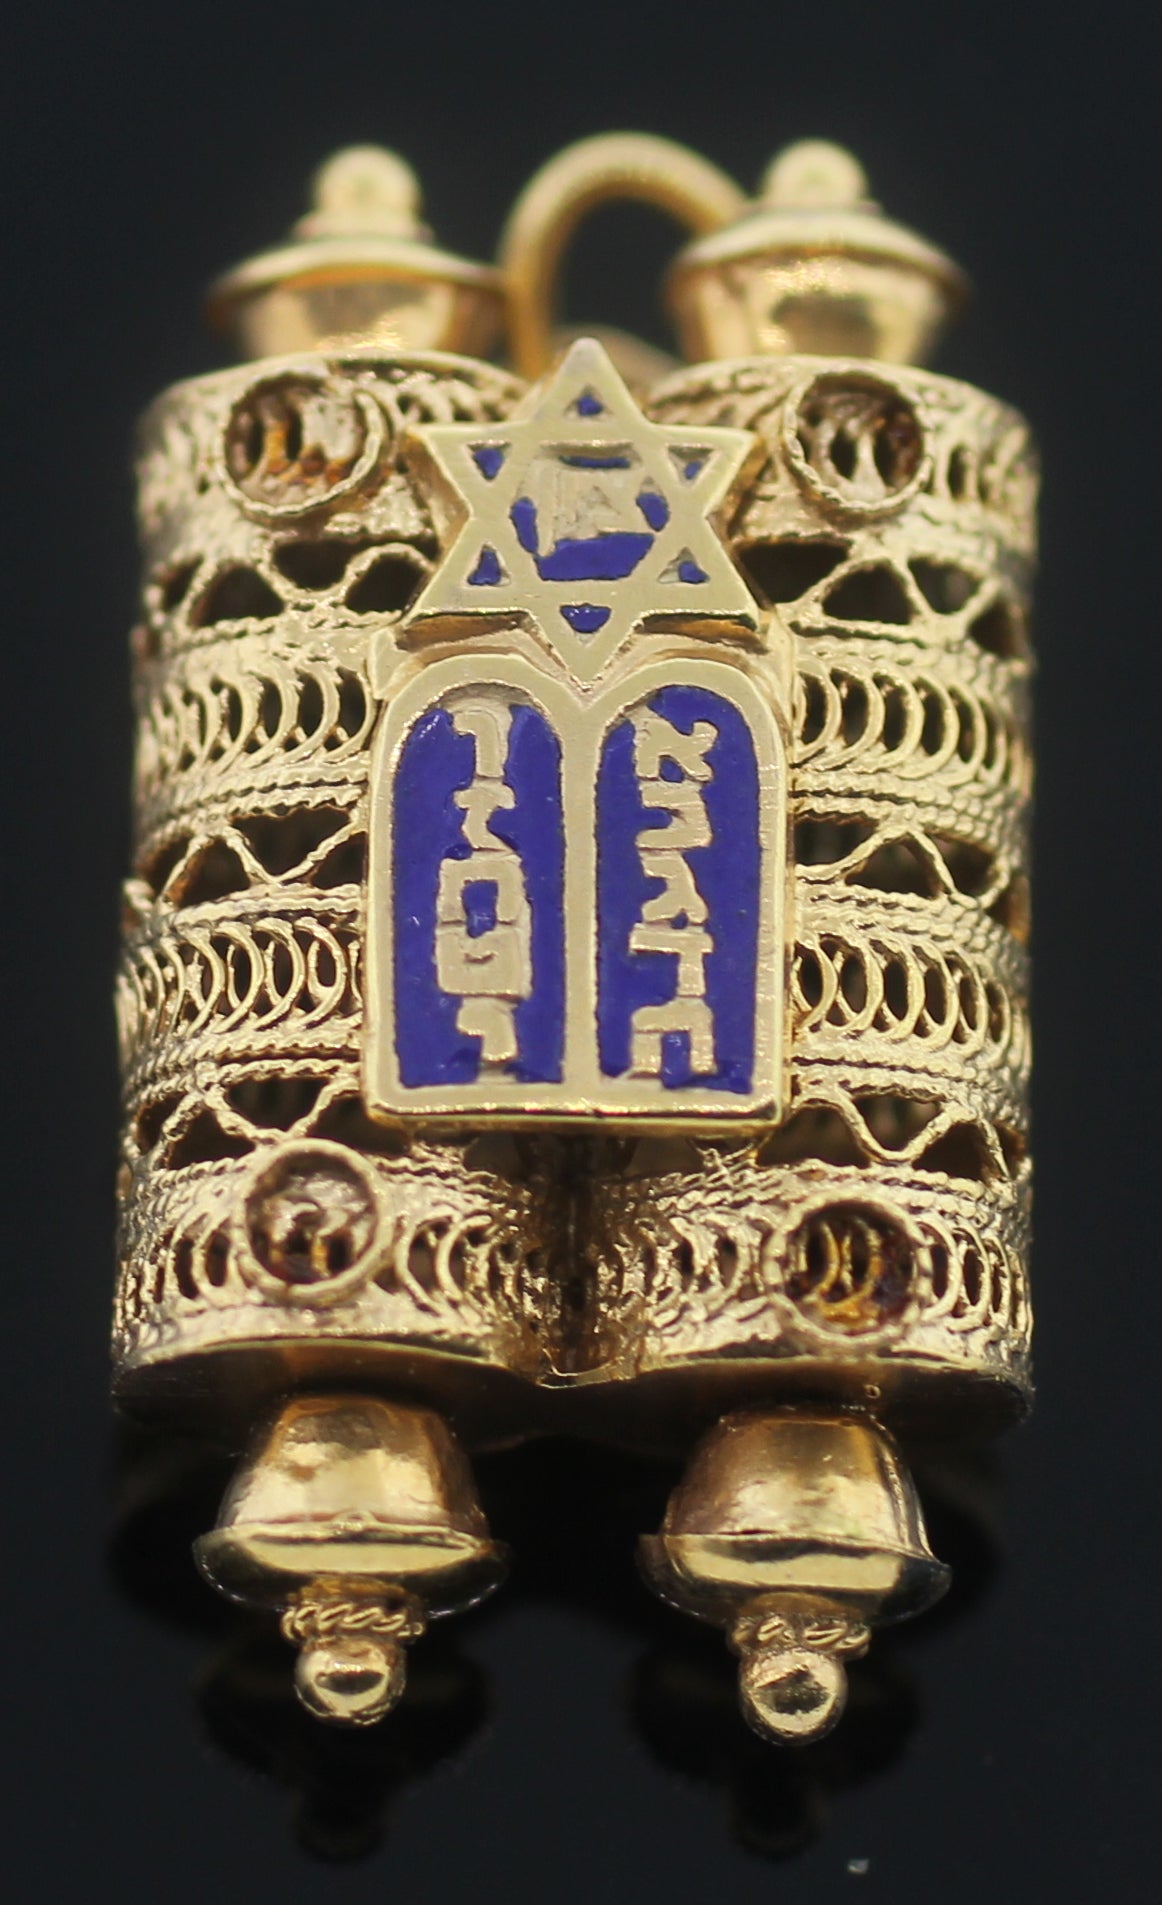 Collier à breloques judaïque Mezuzah en or avec pendentif (succession)
Gols jaunes